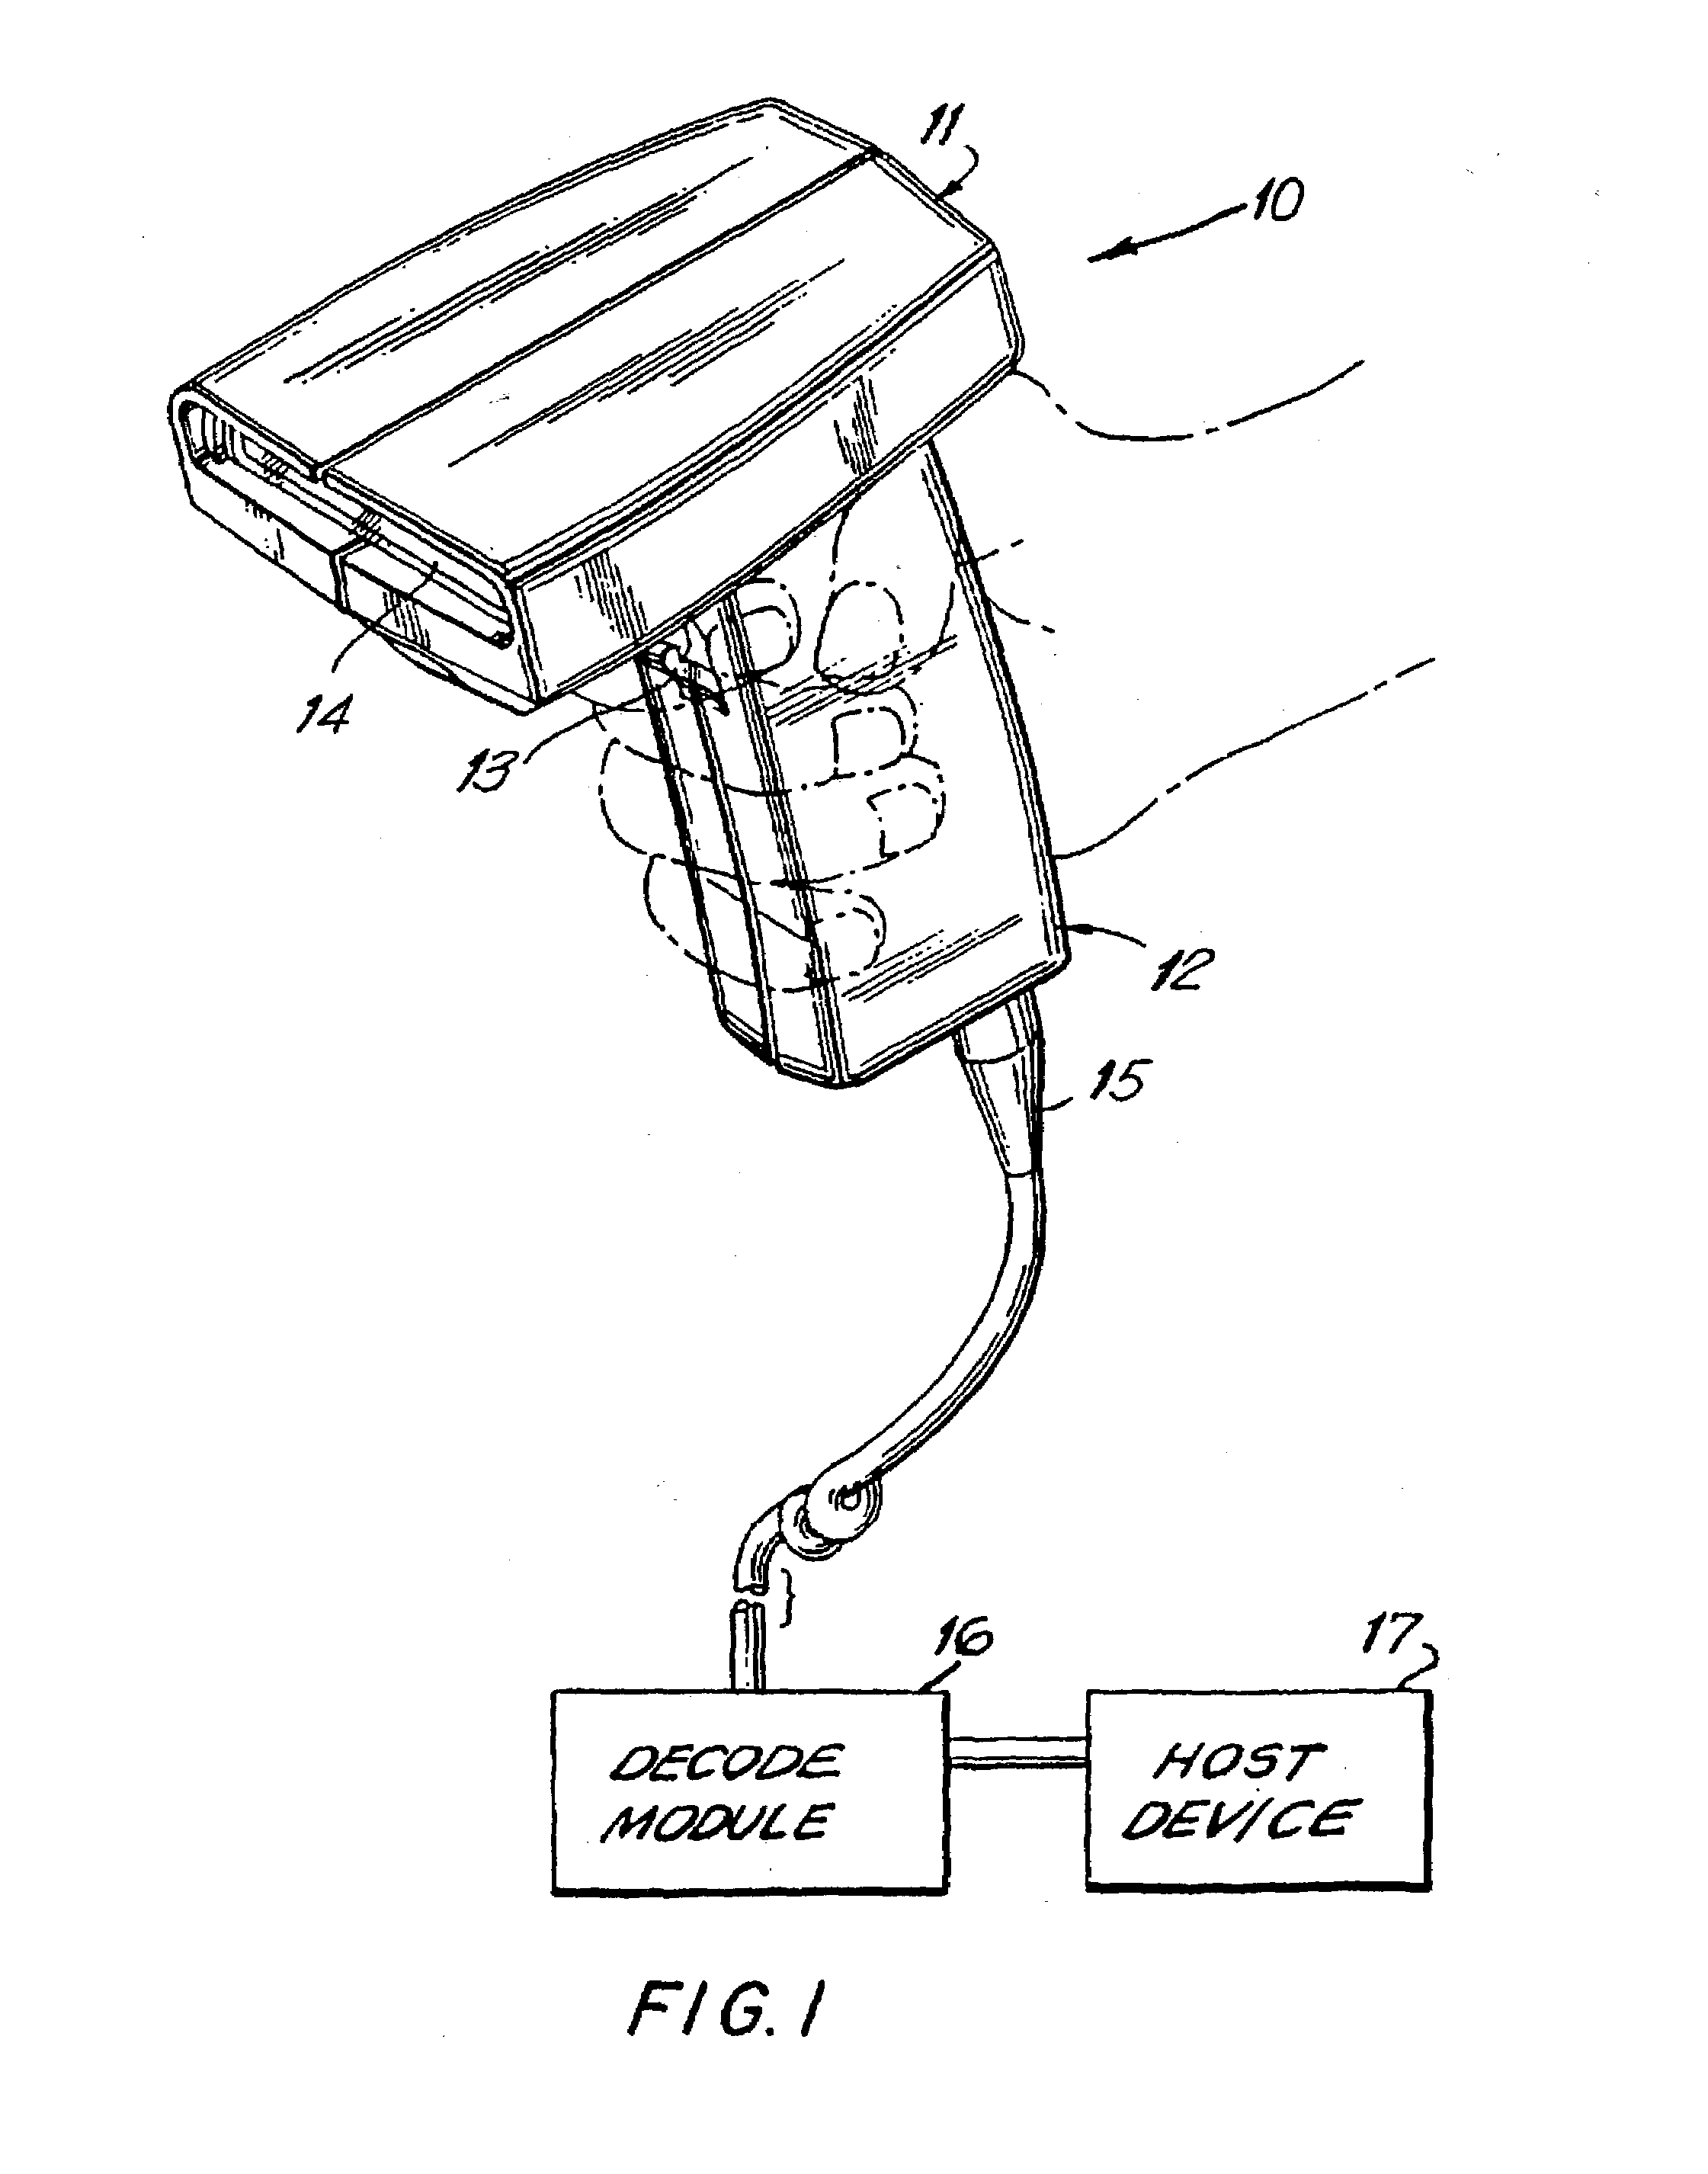 Inertial drive scanning arrangement and method